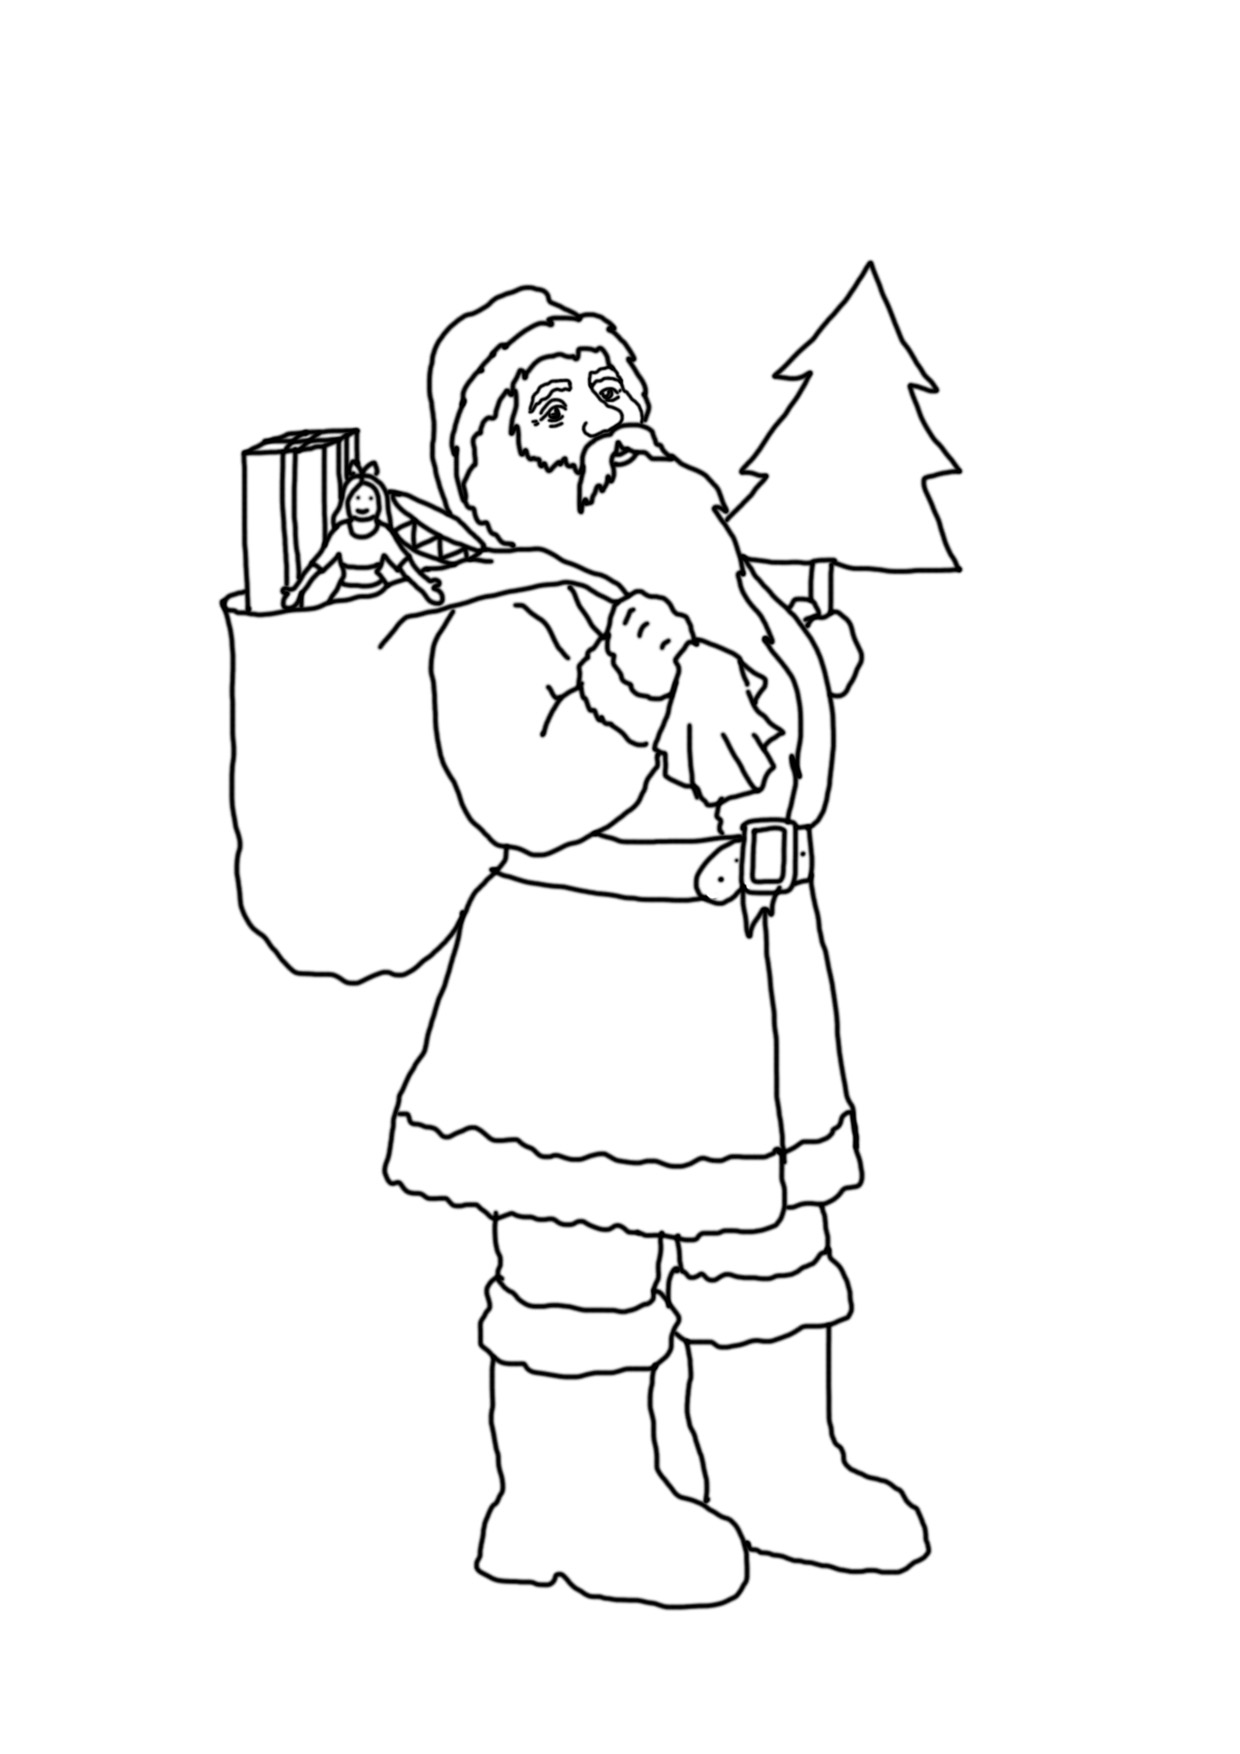 Santa with sack and Christmas tree